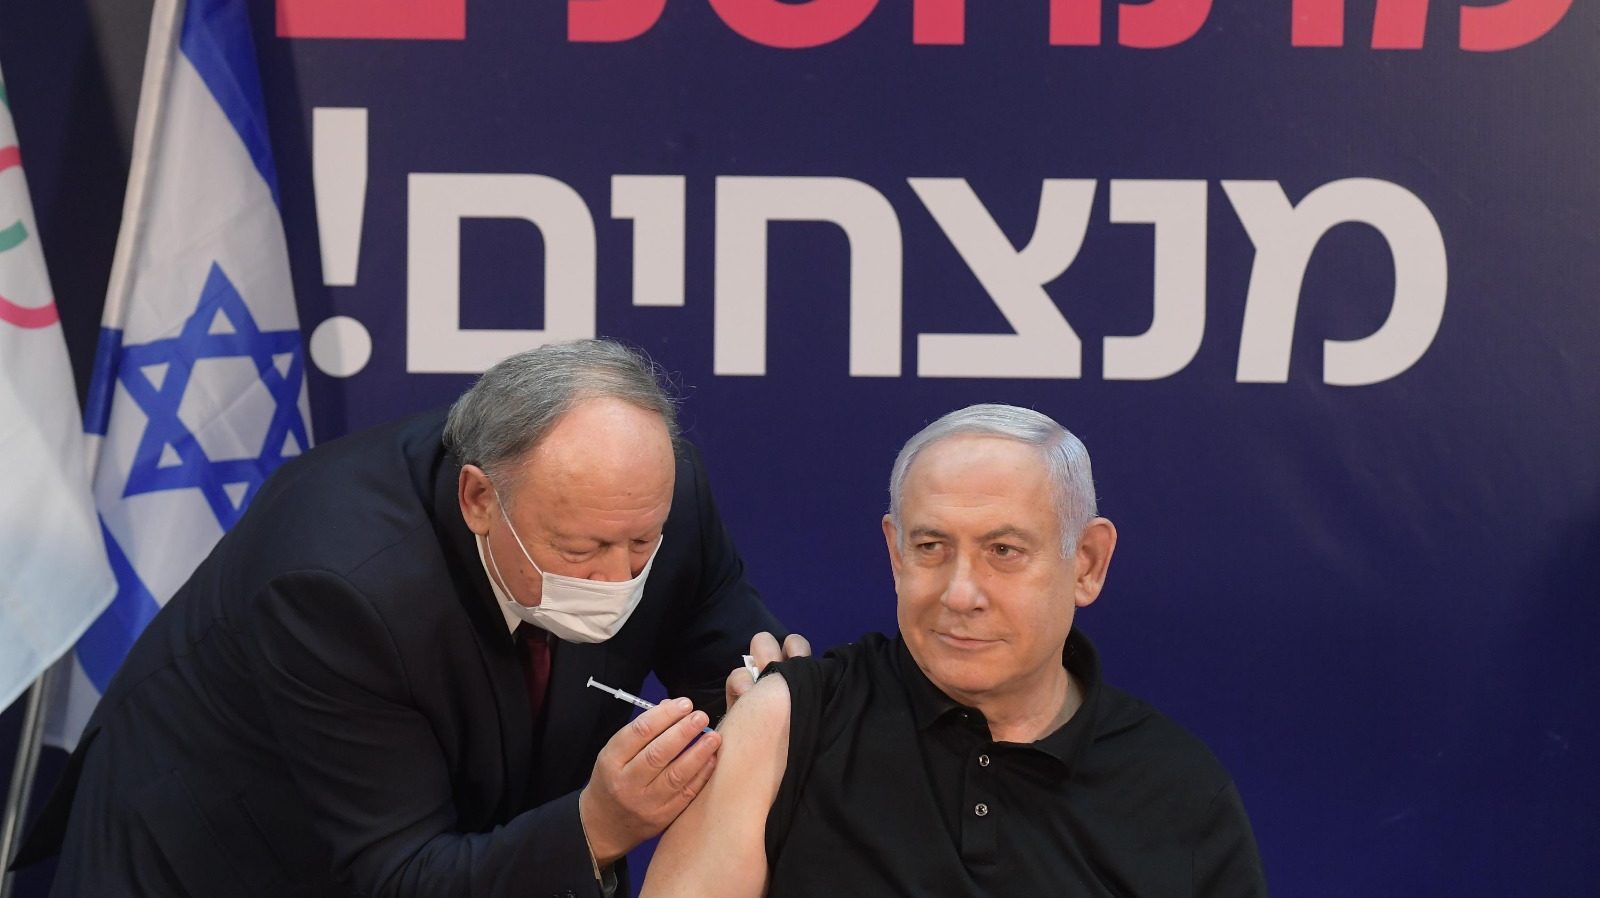 Netanyahu Receives Coronavirus Vaccine on Live TV